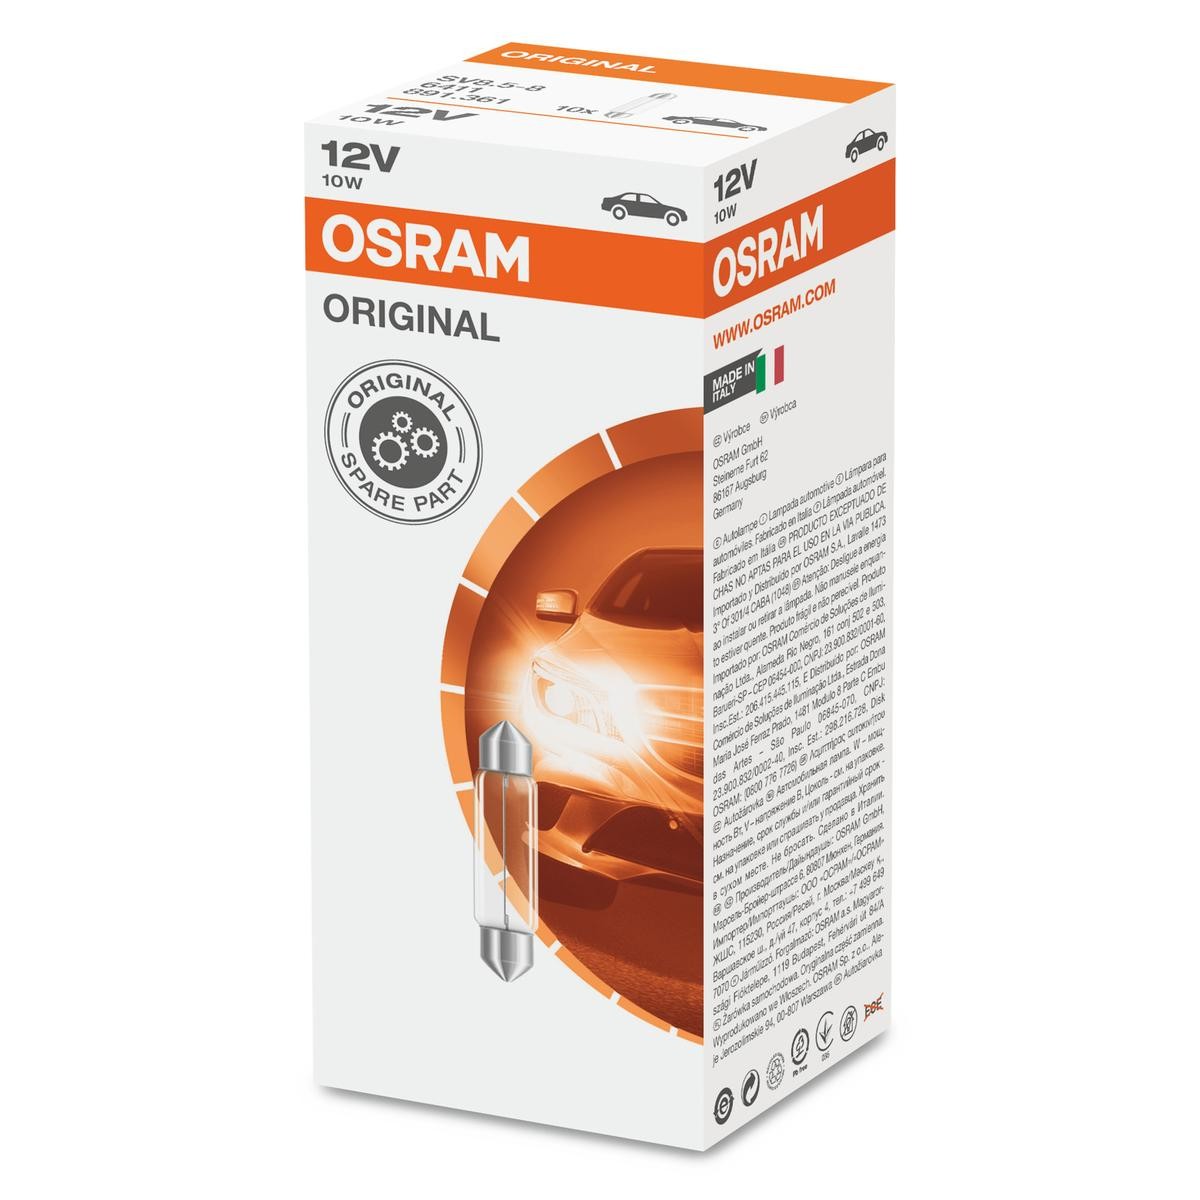 Seat ARONA peças de qualidade original OSRAM 6411